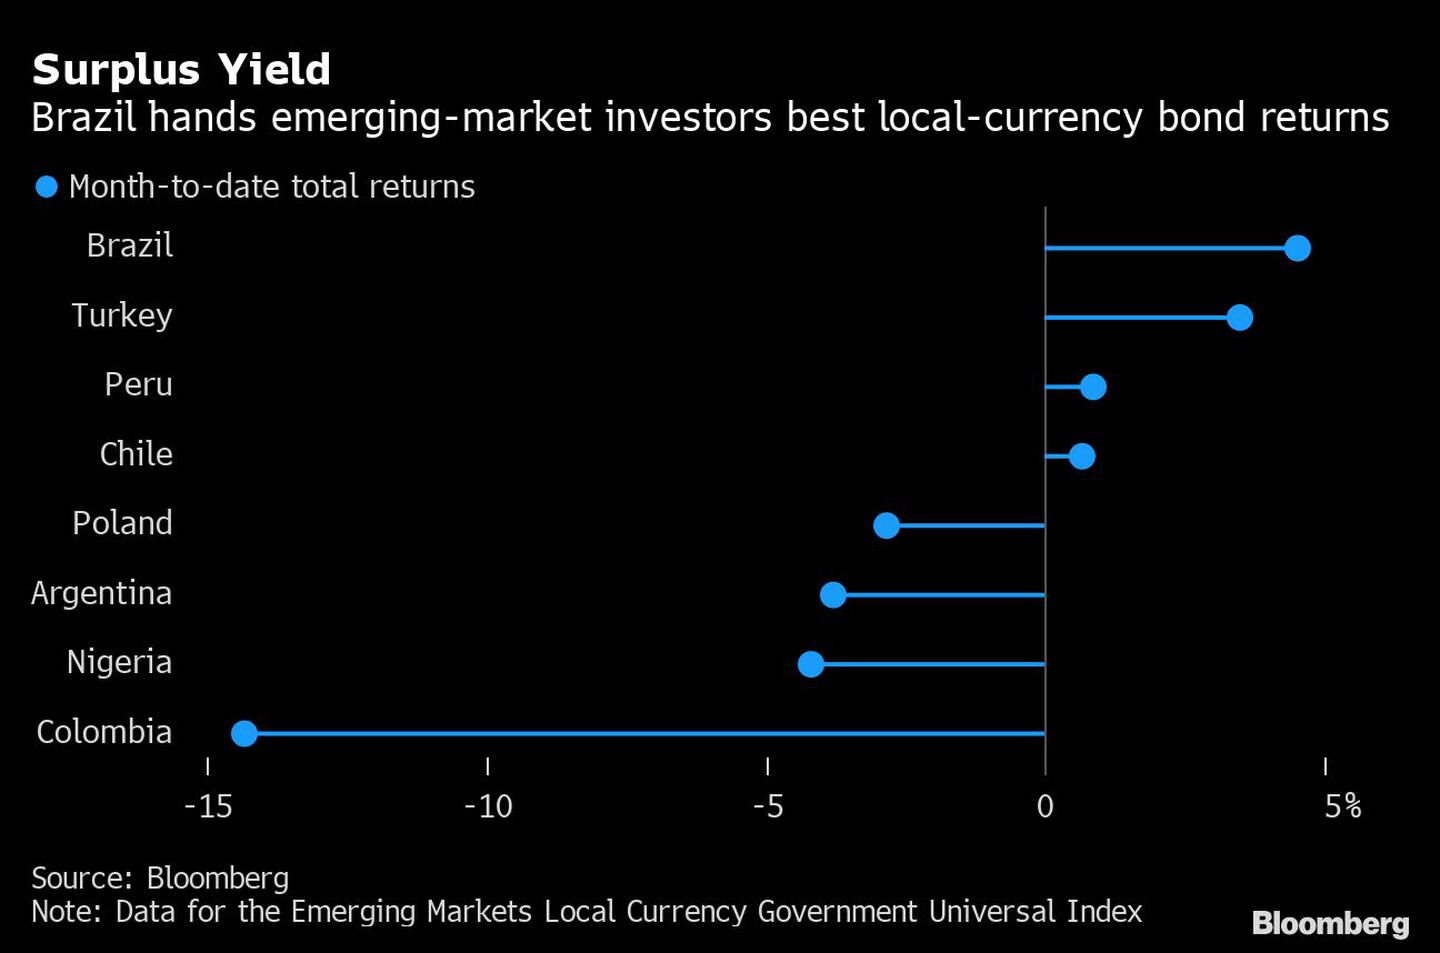 Rendimiento excedente | Brasil otorga a inversionistas de mercados emergentes los mejores retornos de bonos en moneda local.dfd